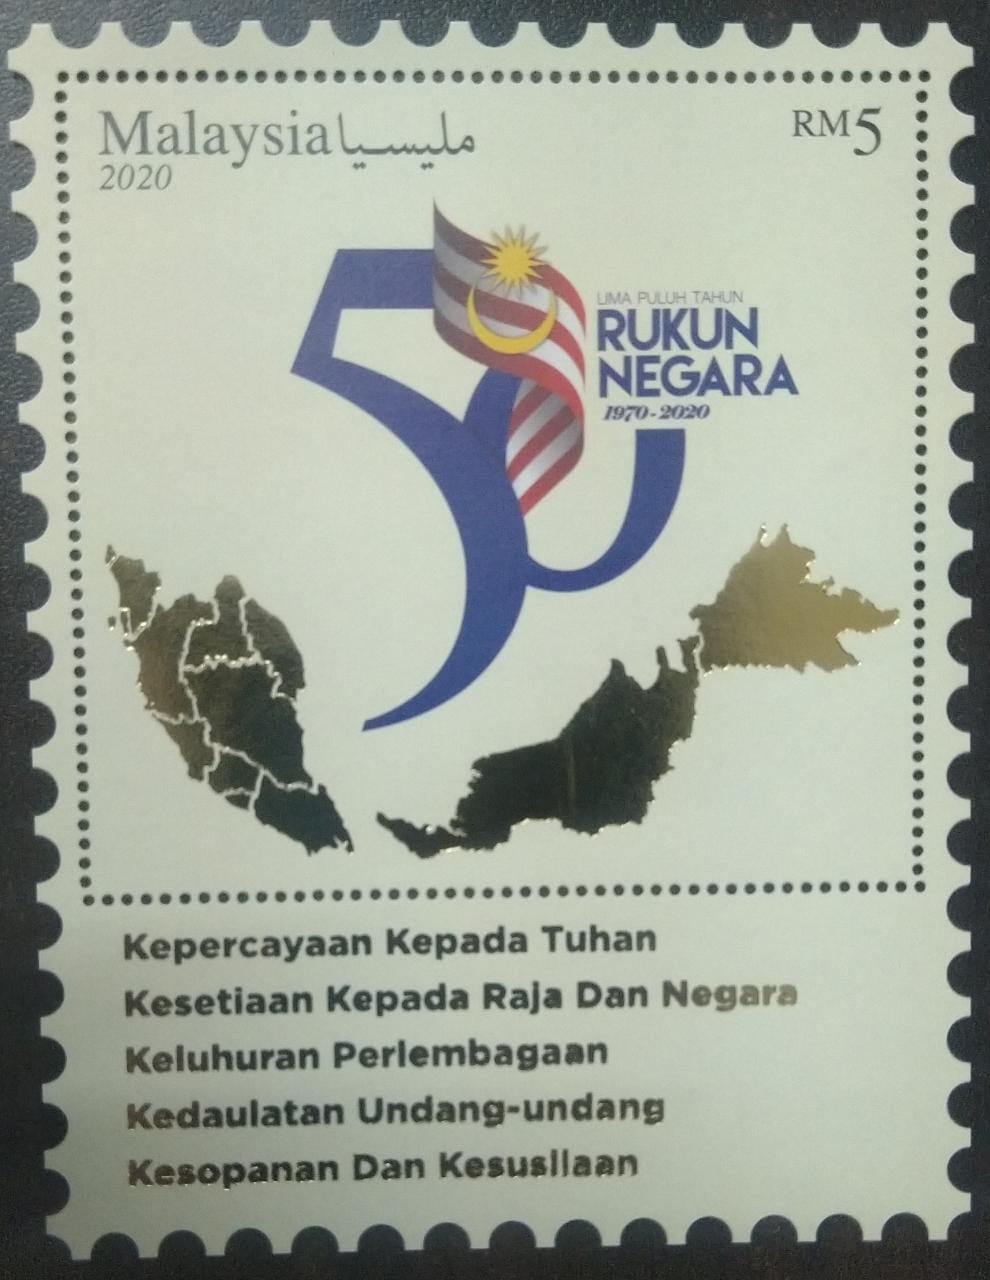 मलेशिया 2020 - रुकुन नेगारा की 50वीं वर्षगांठ